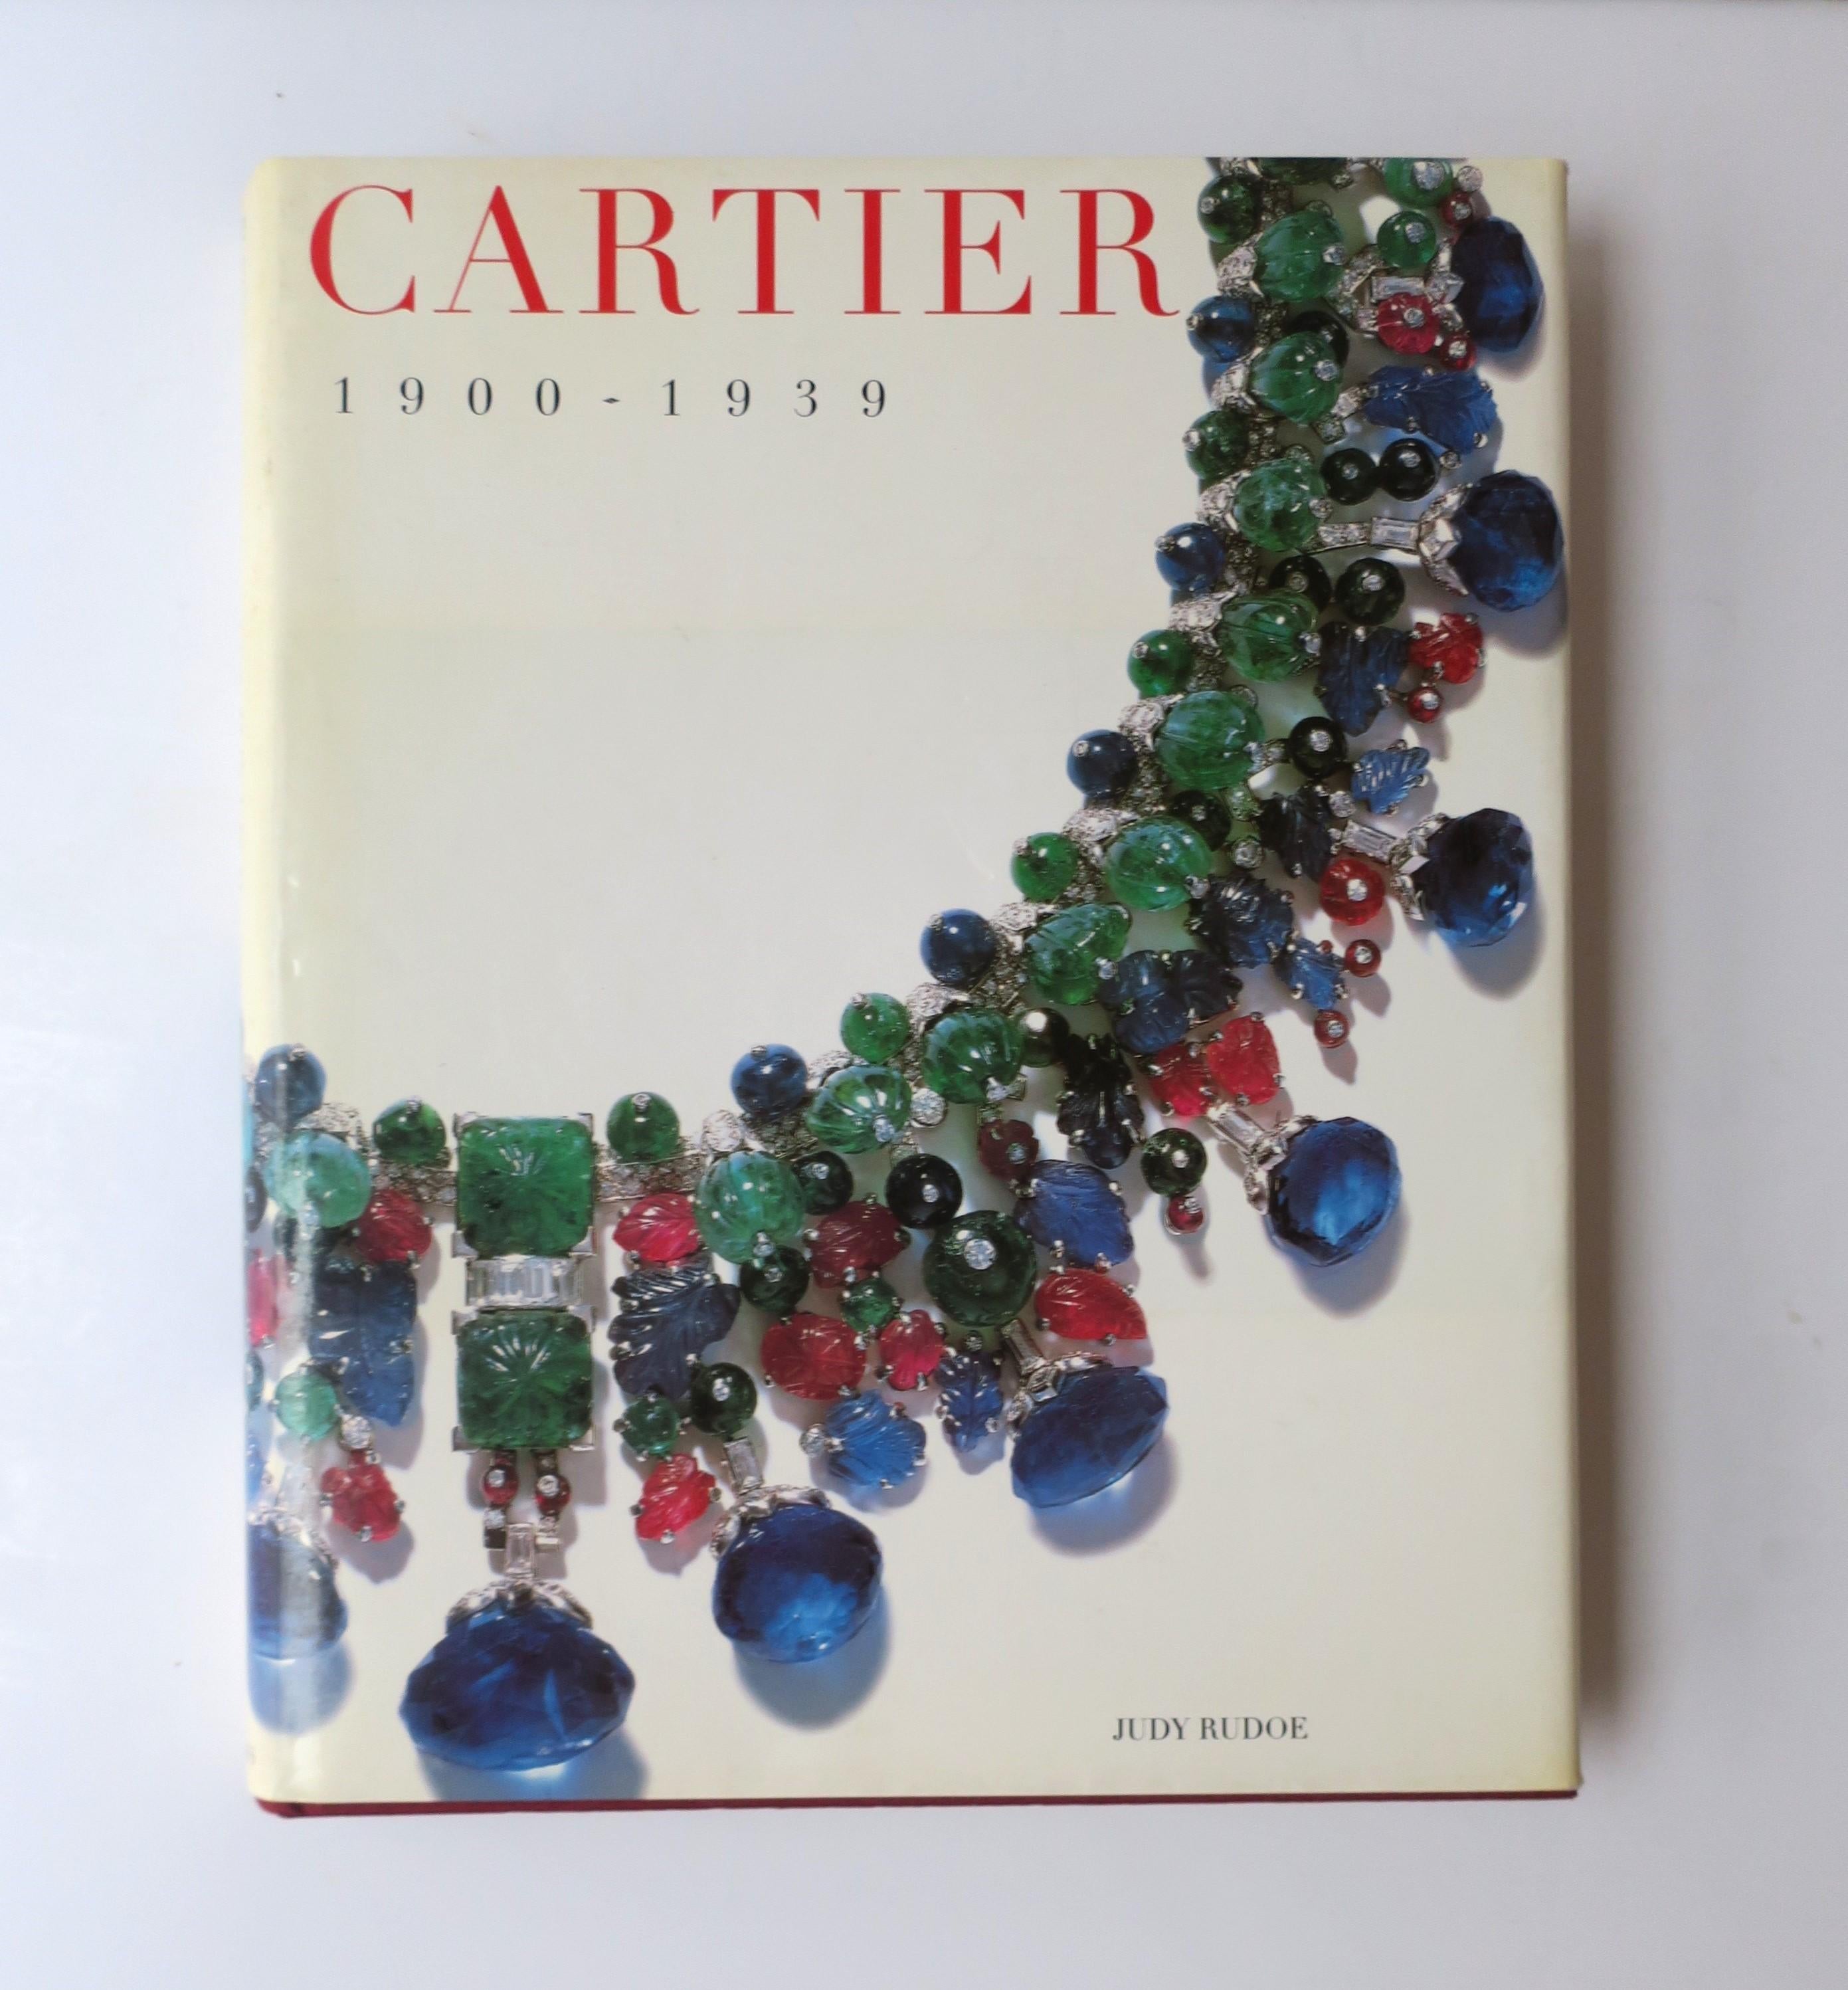 CARTIER 1900 - 1939
Paris, Londres, New York. 

Ce livre spécial à couverture rigide a été publié en l'honneur de l'exposition 